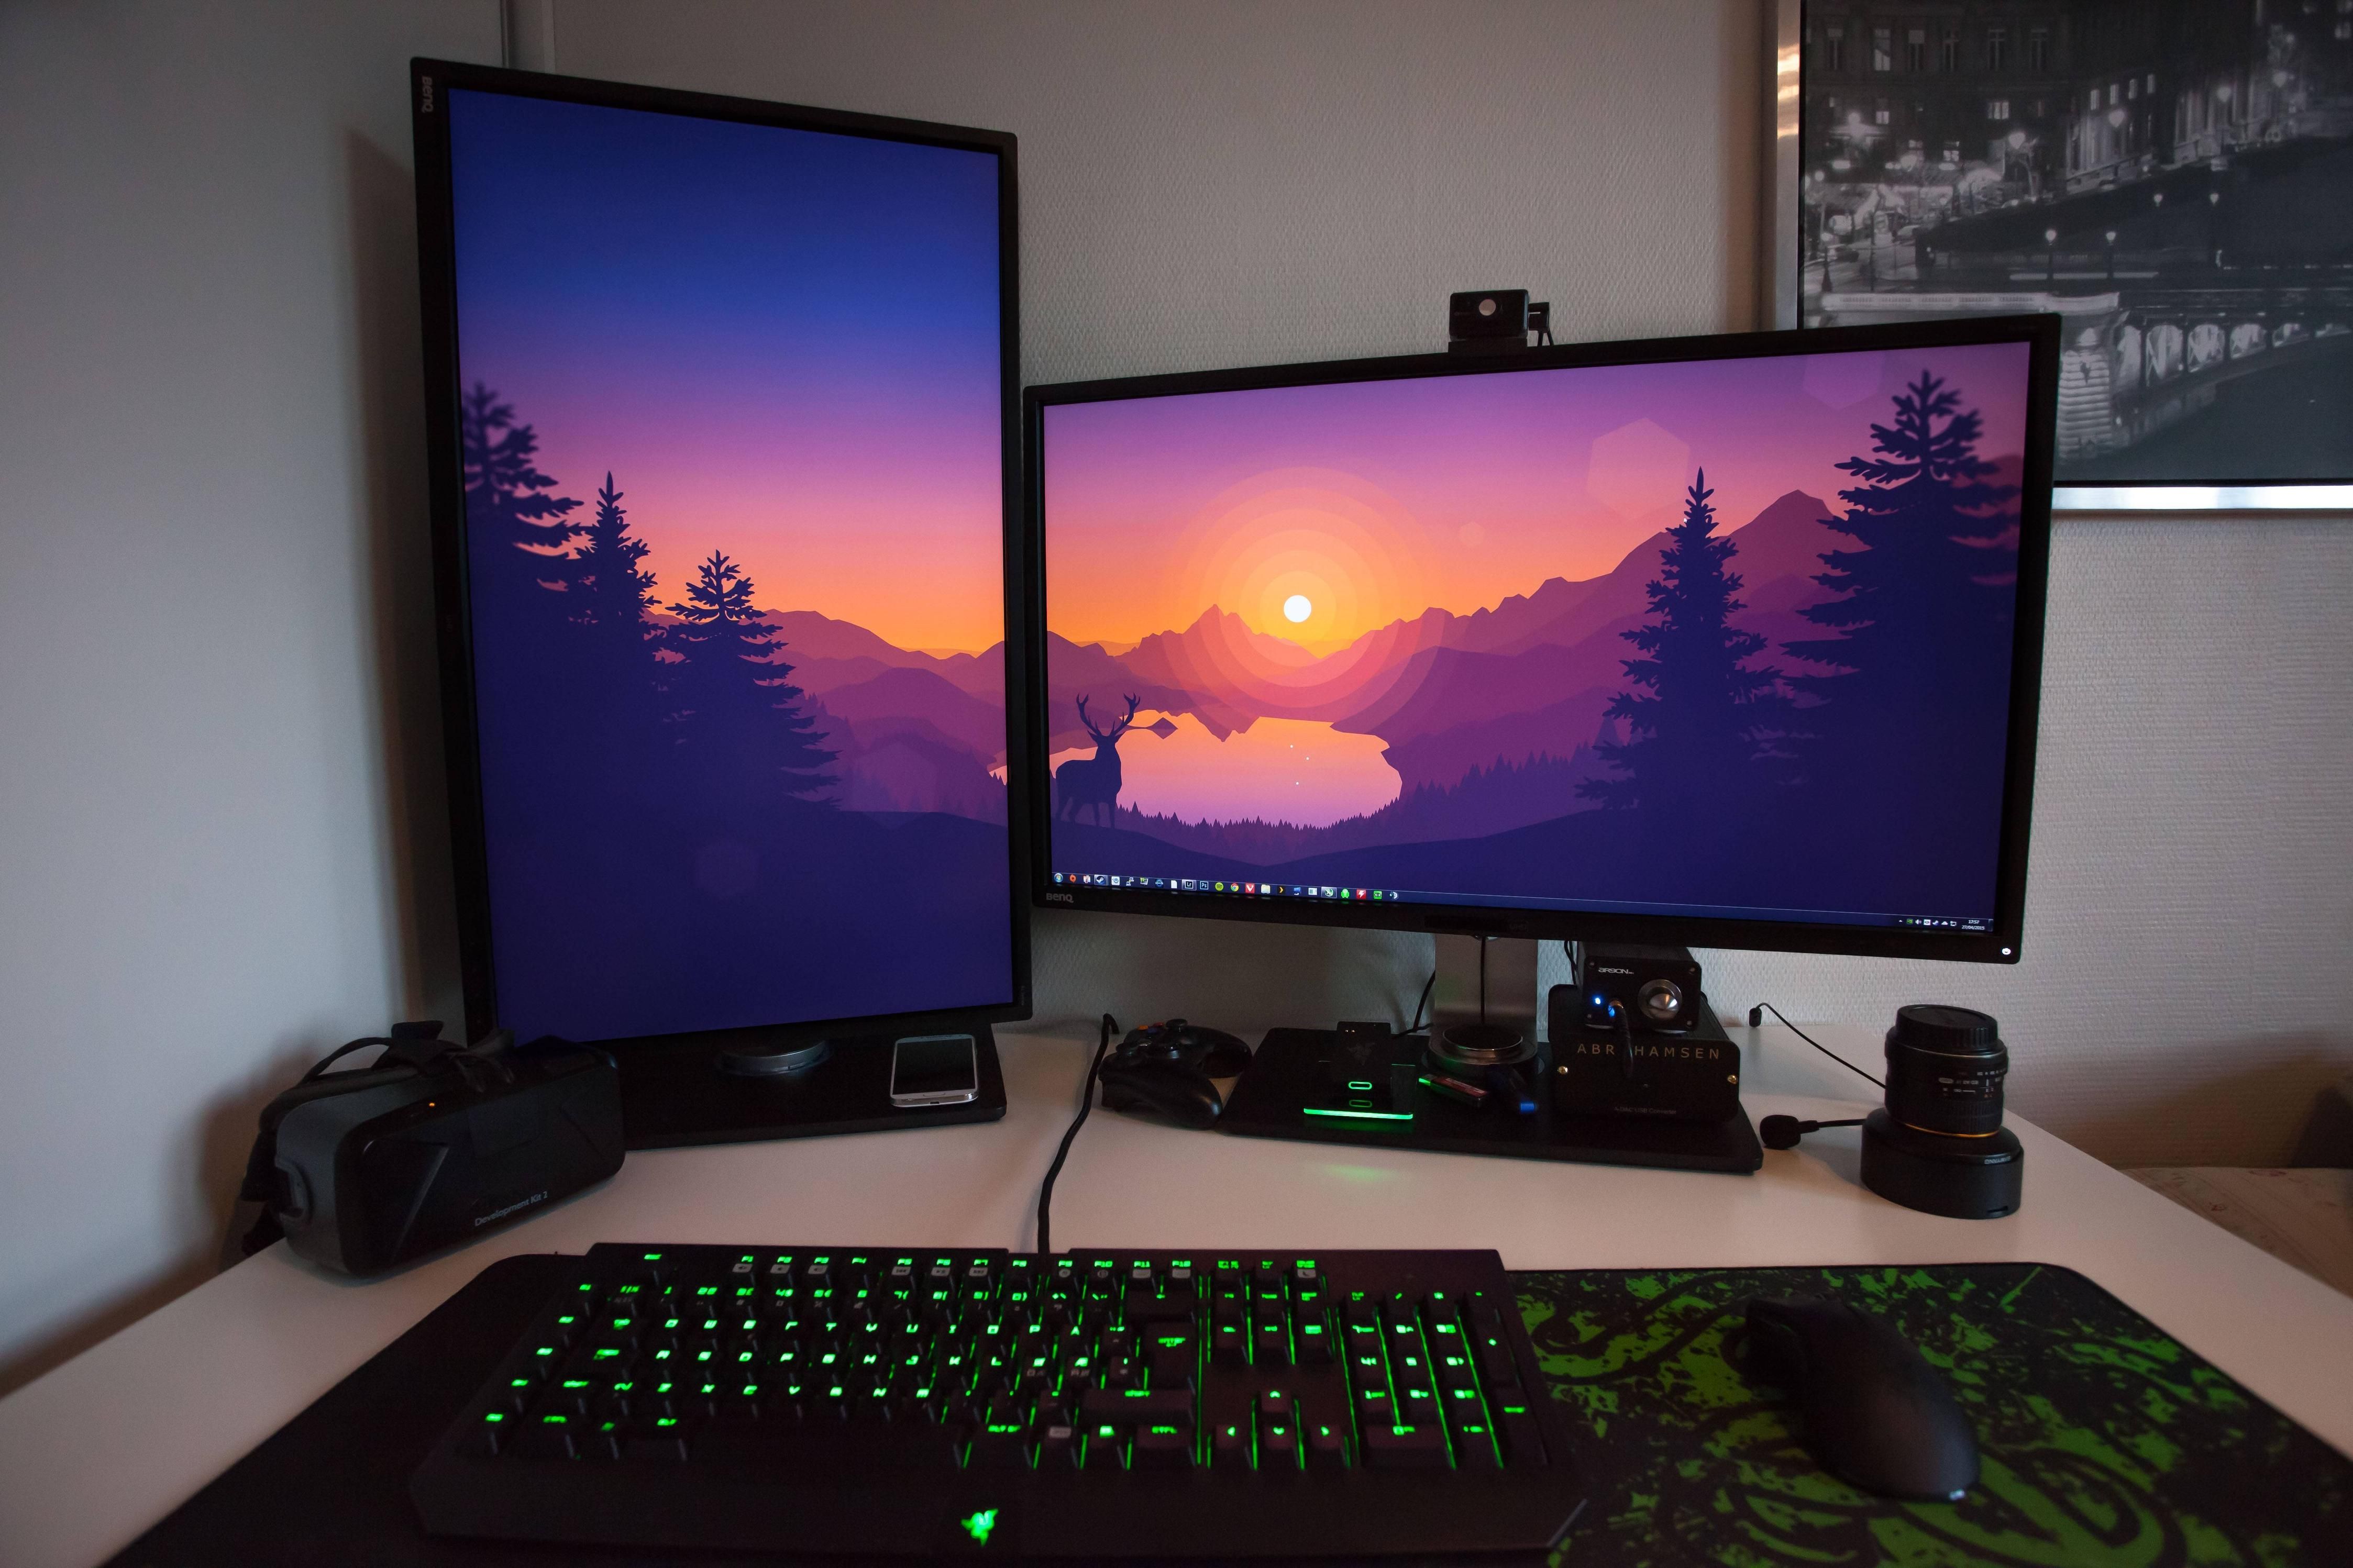 Skyrim Dual Monitor Wallpapers